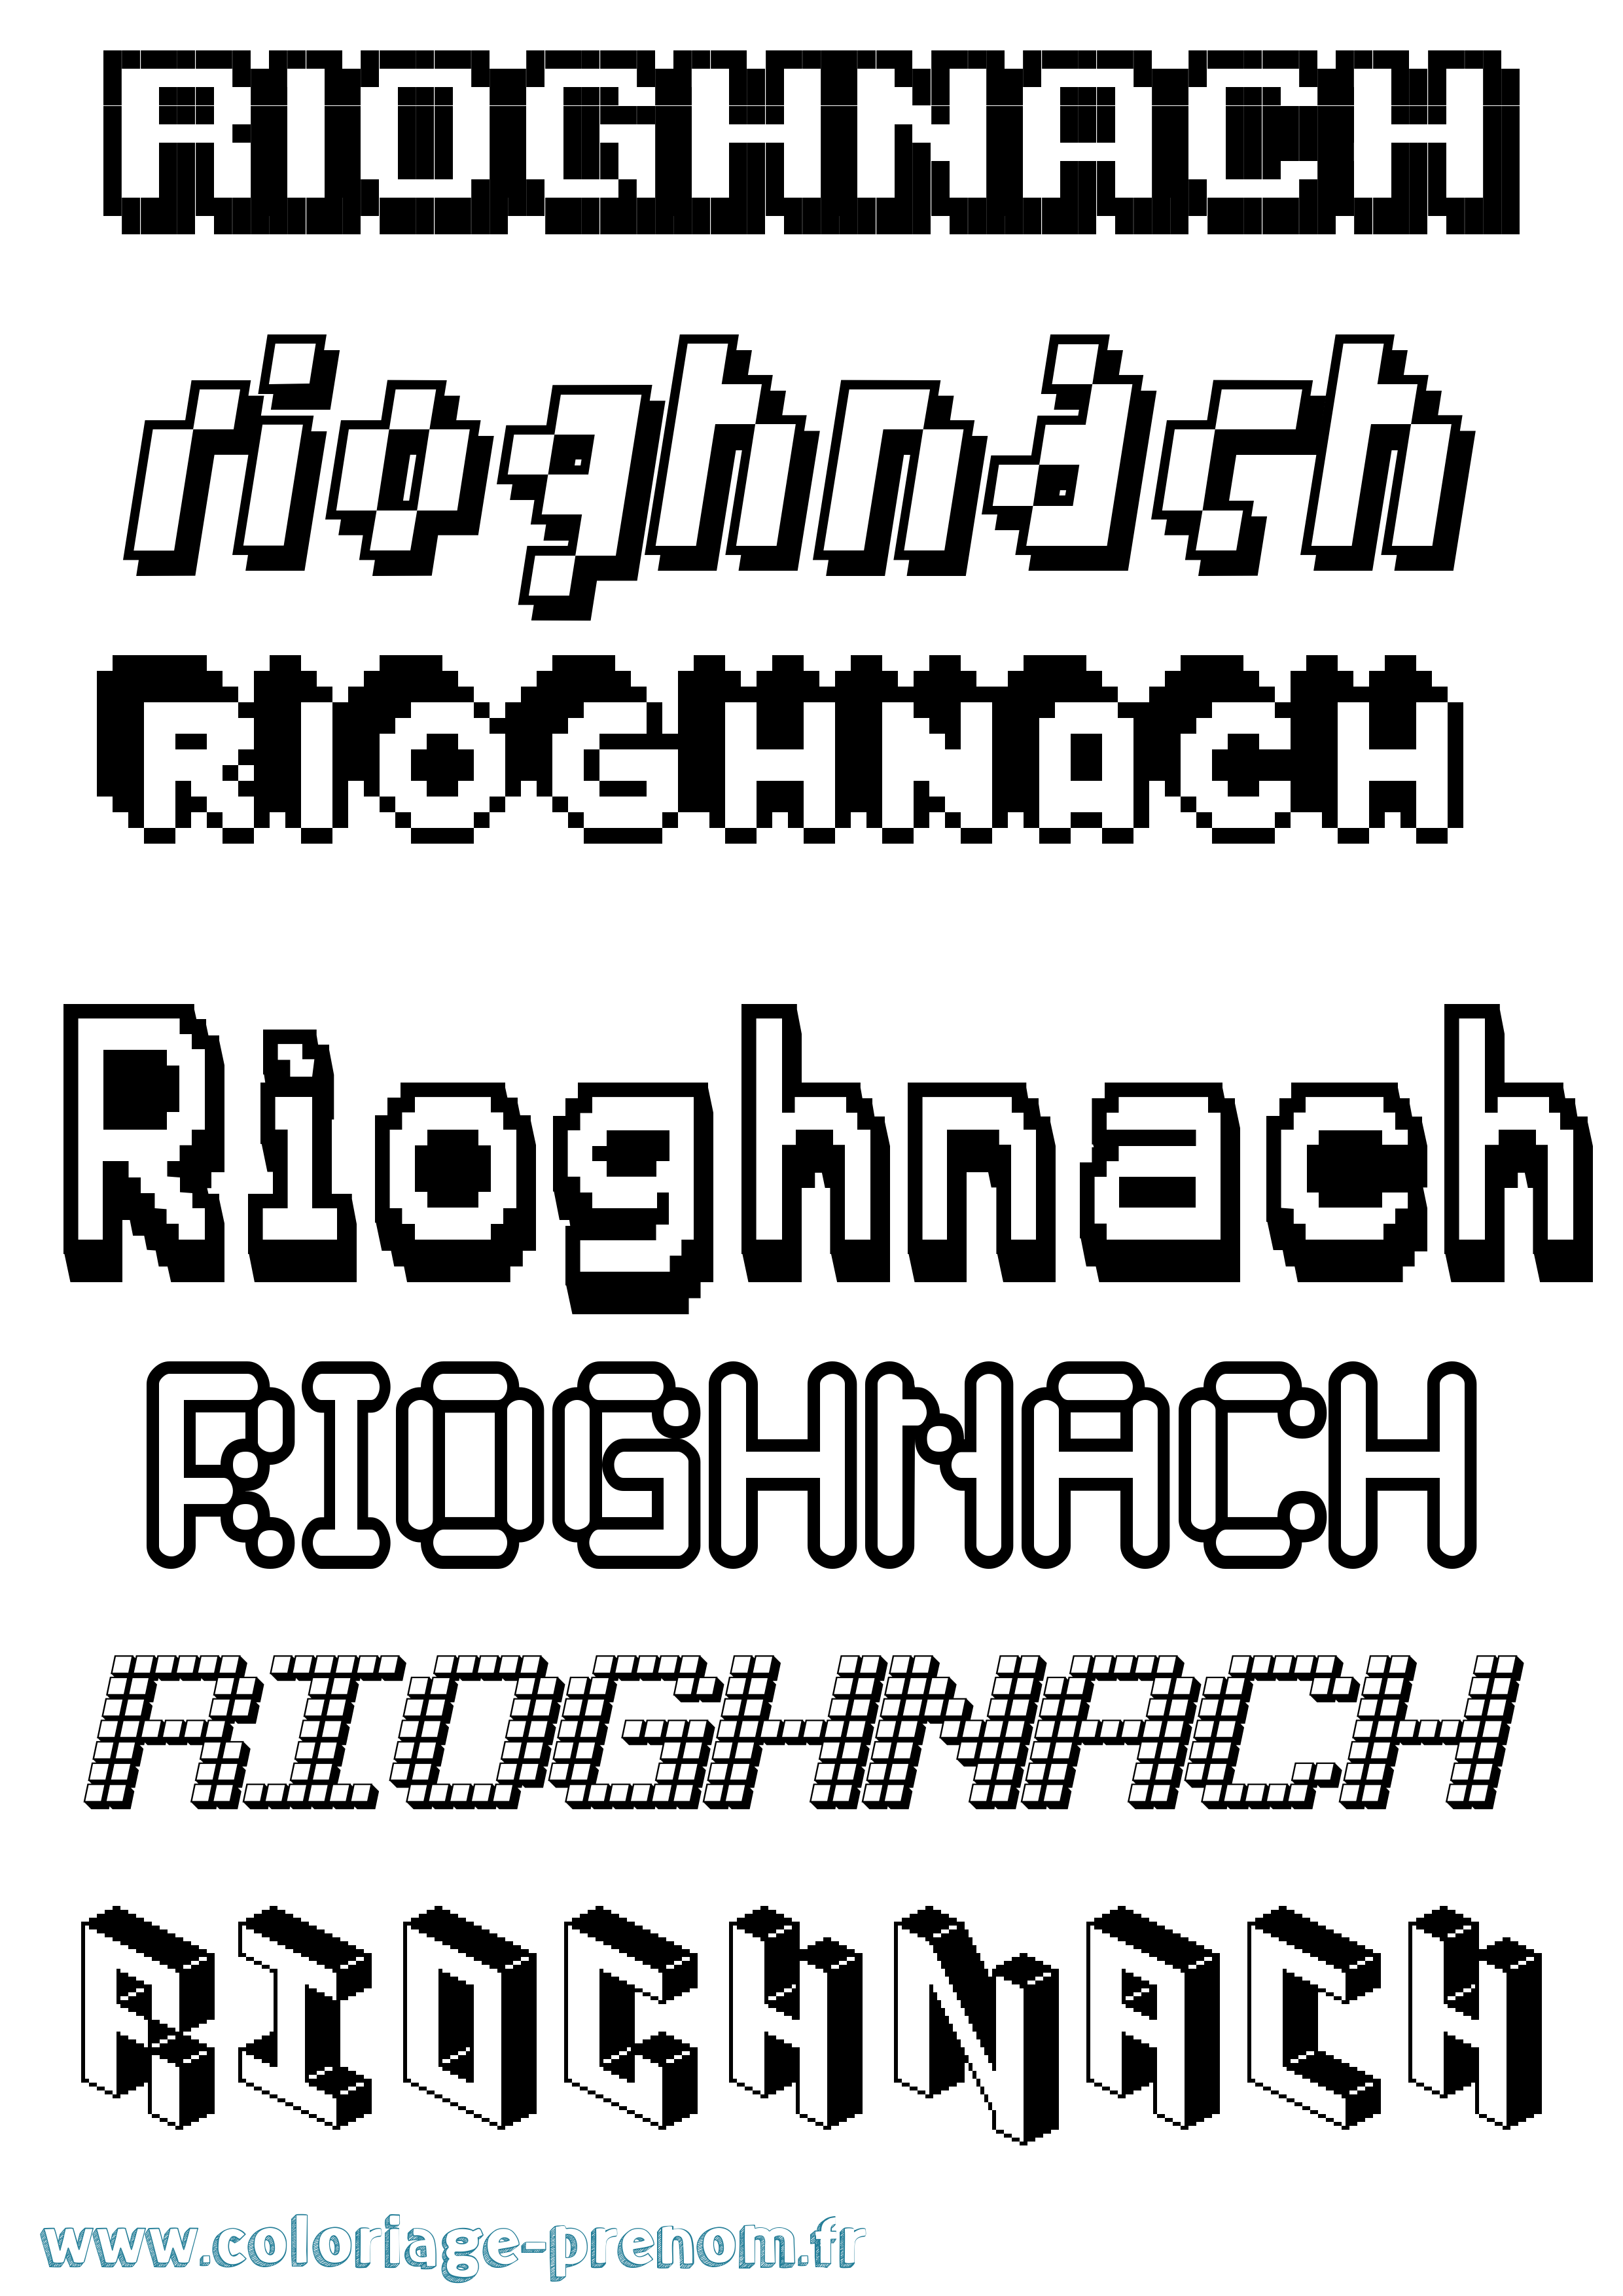 Coloriage prénom Ríoghnach Pixel